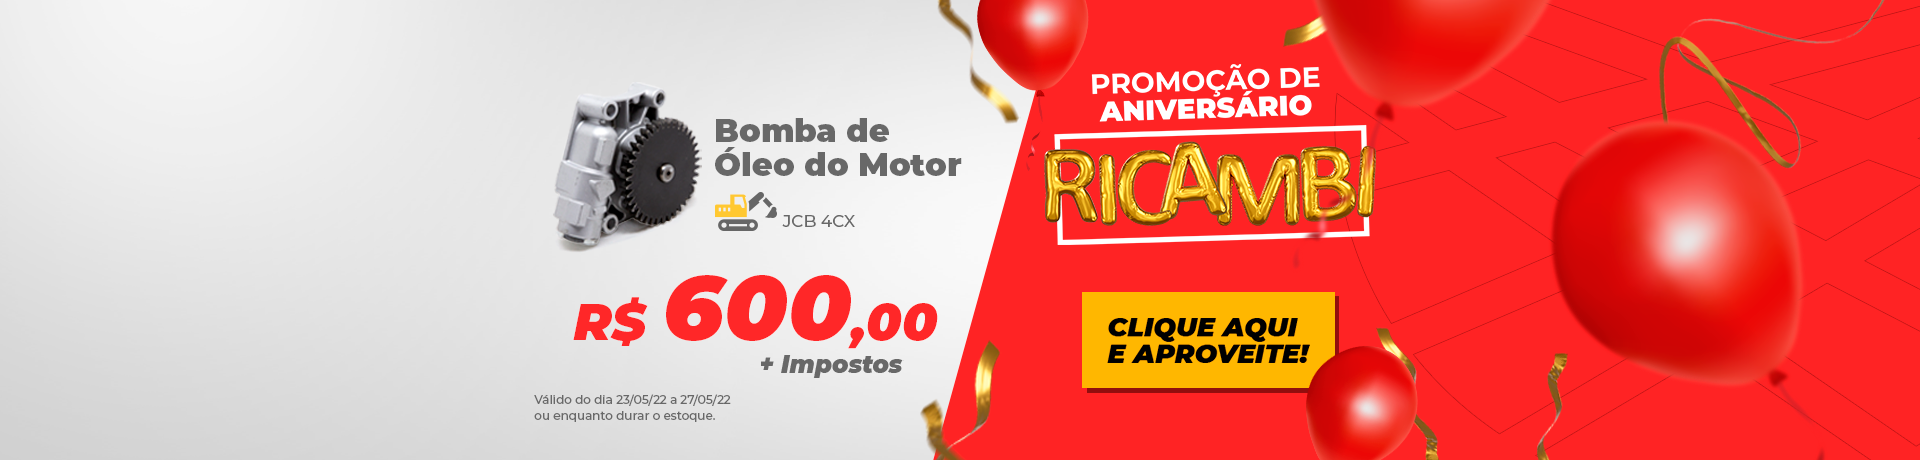 Ricambi - Promoção da semana - bomba de óleo de motor